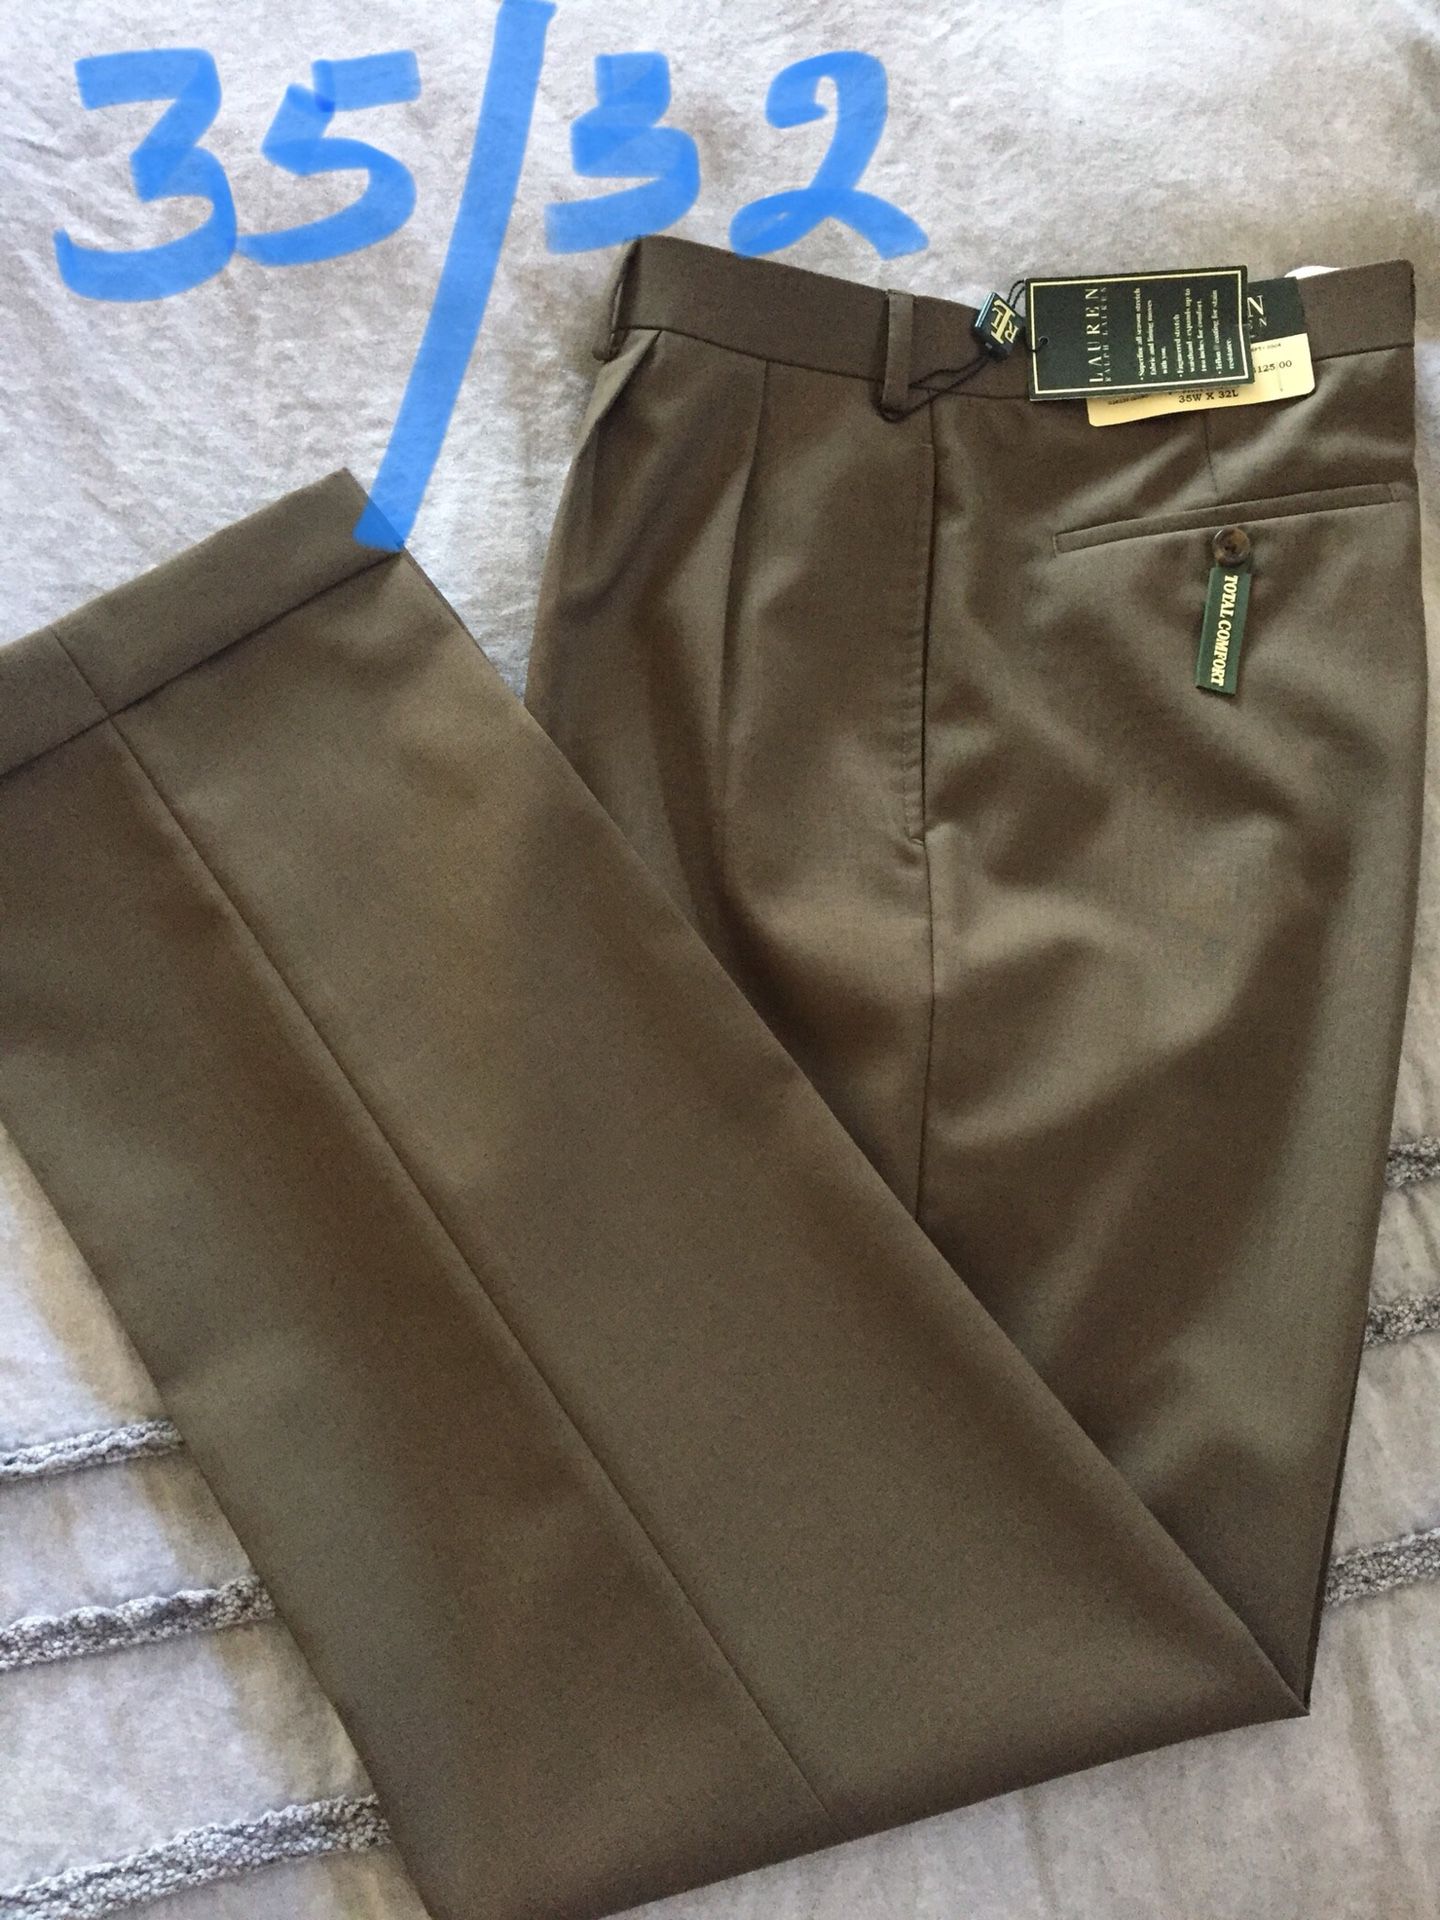 NEW($120) dress pants, RALPH LAUREN, size 35/32, $25( firm)